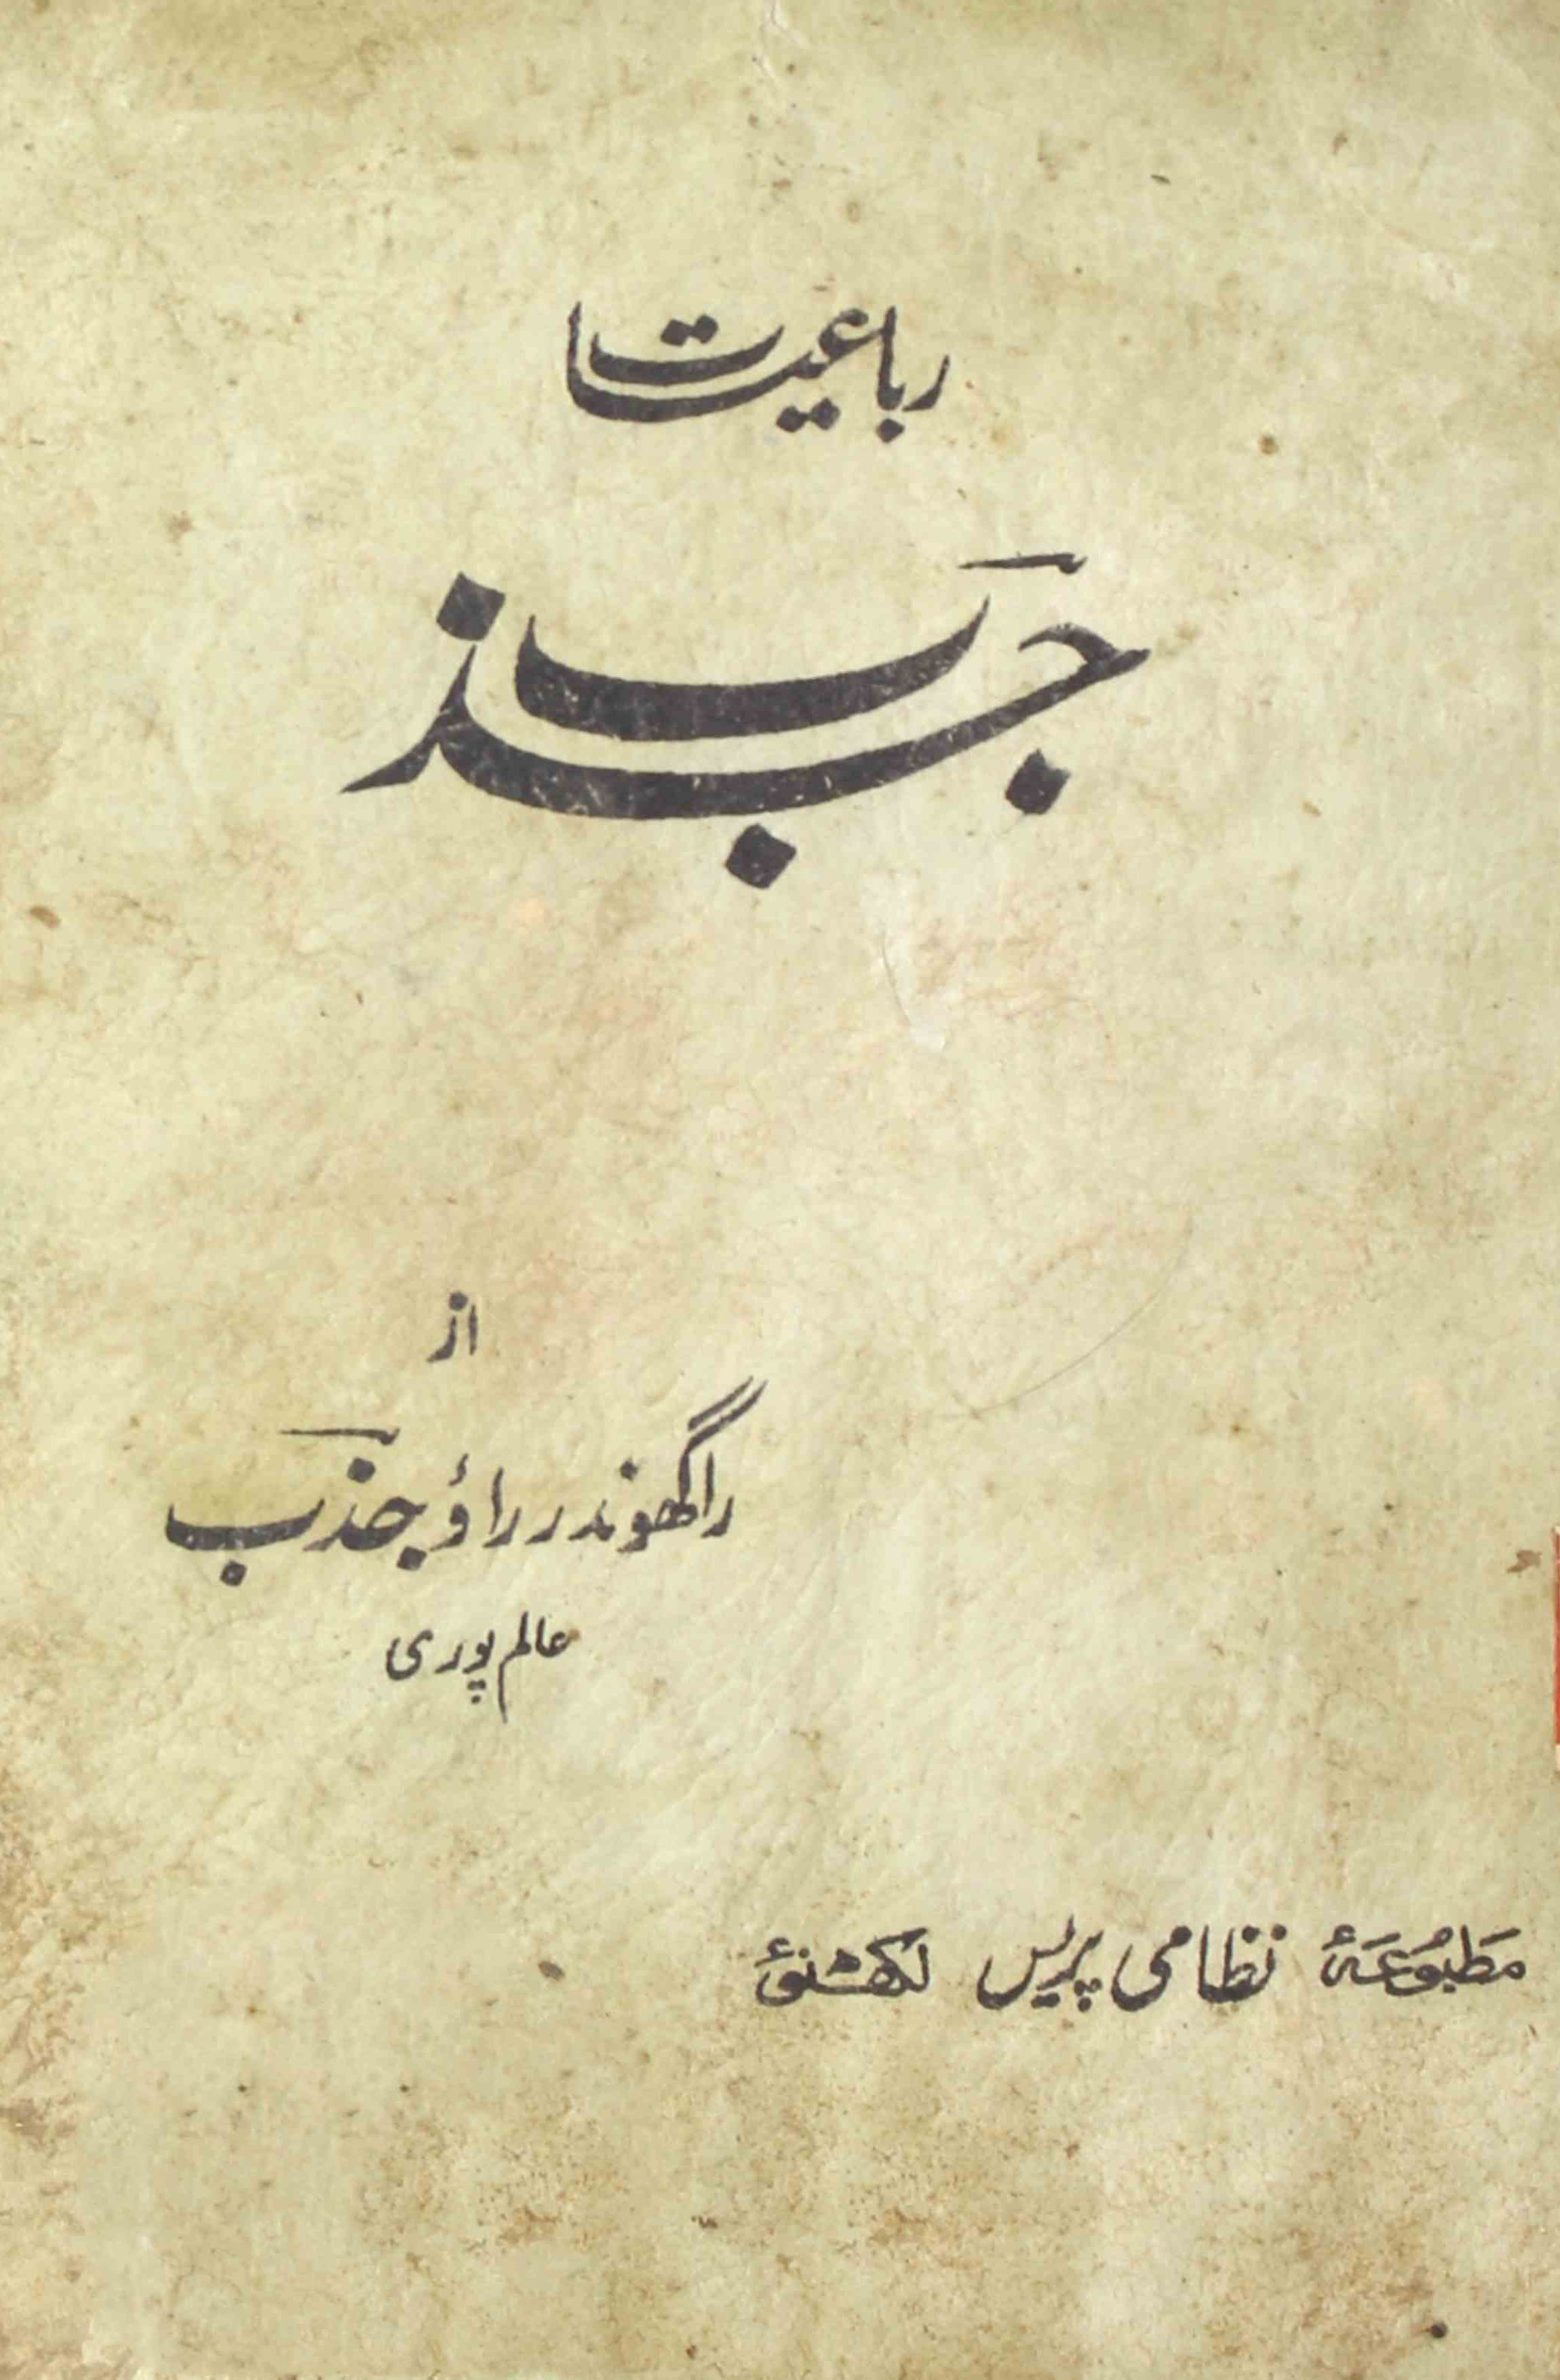 Jazab August 1929